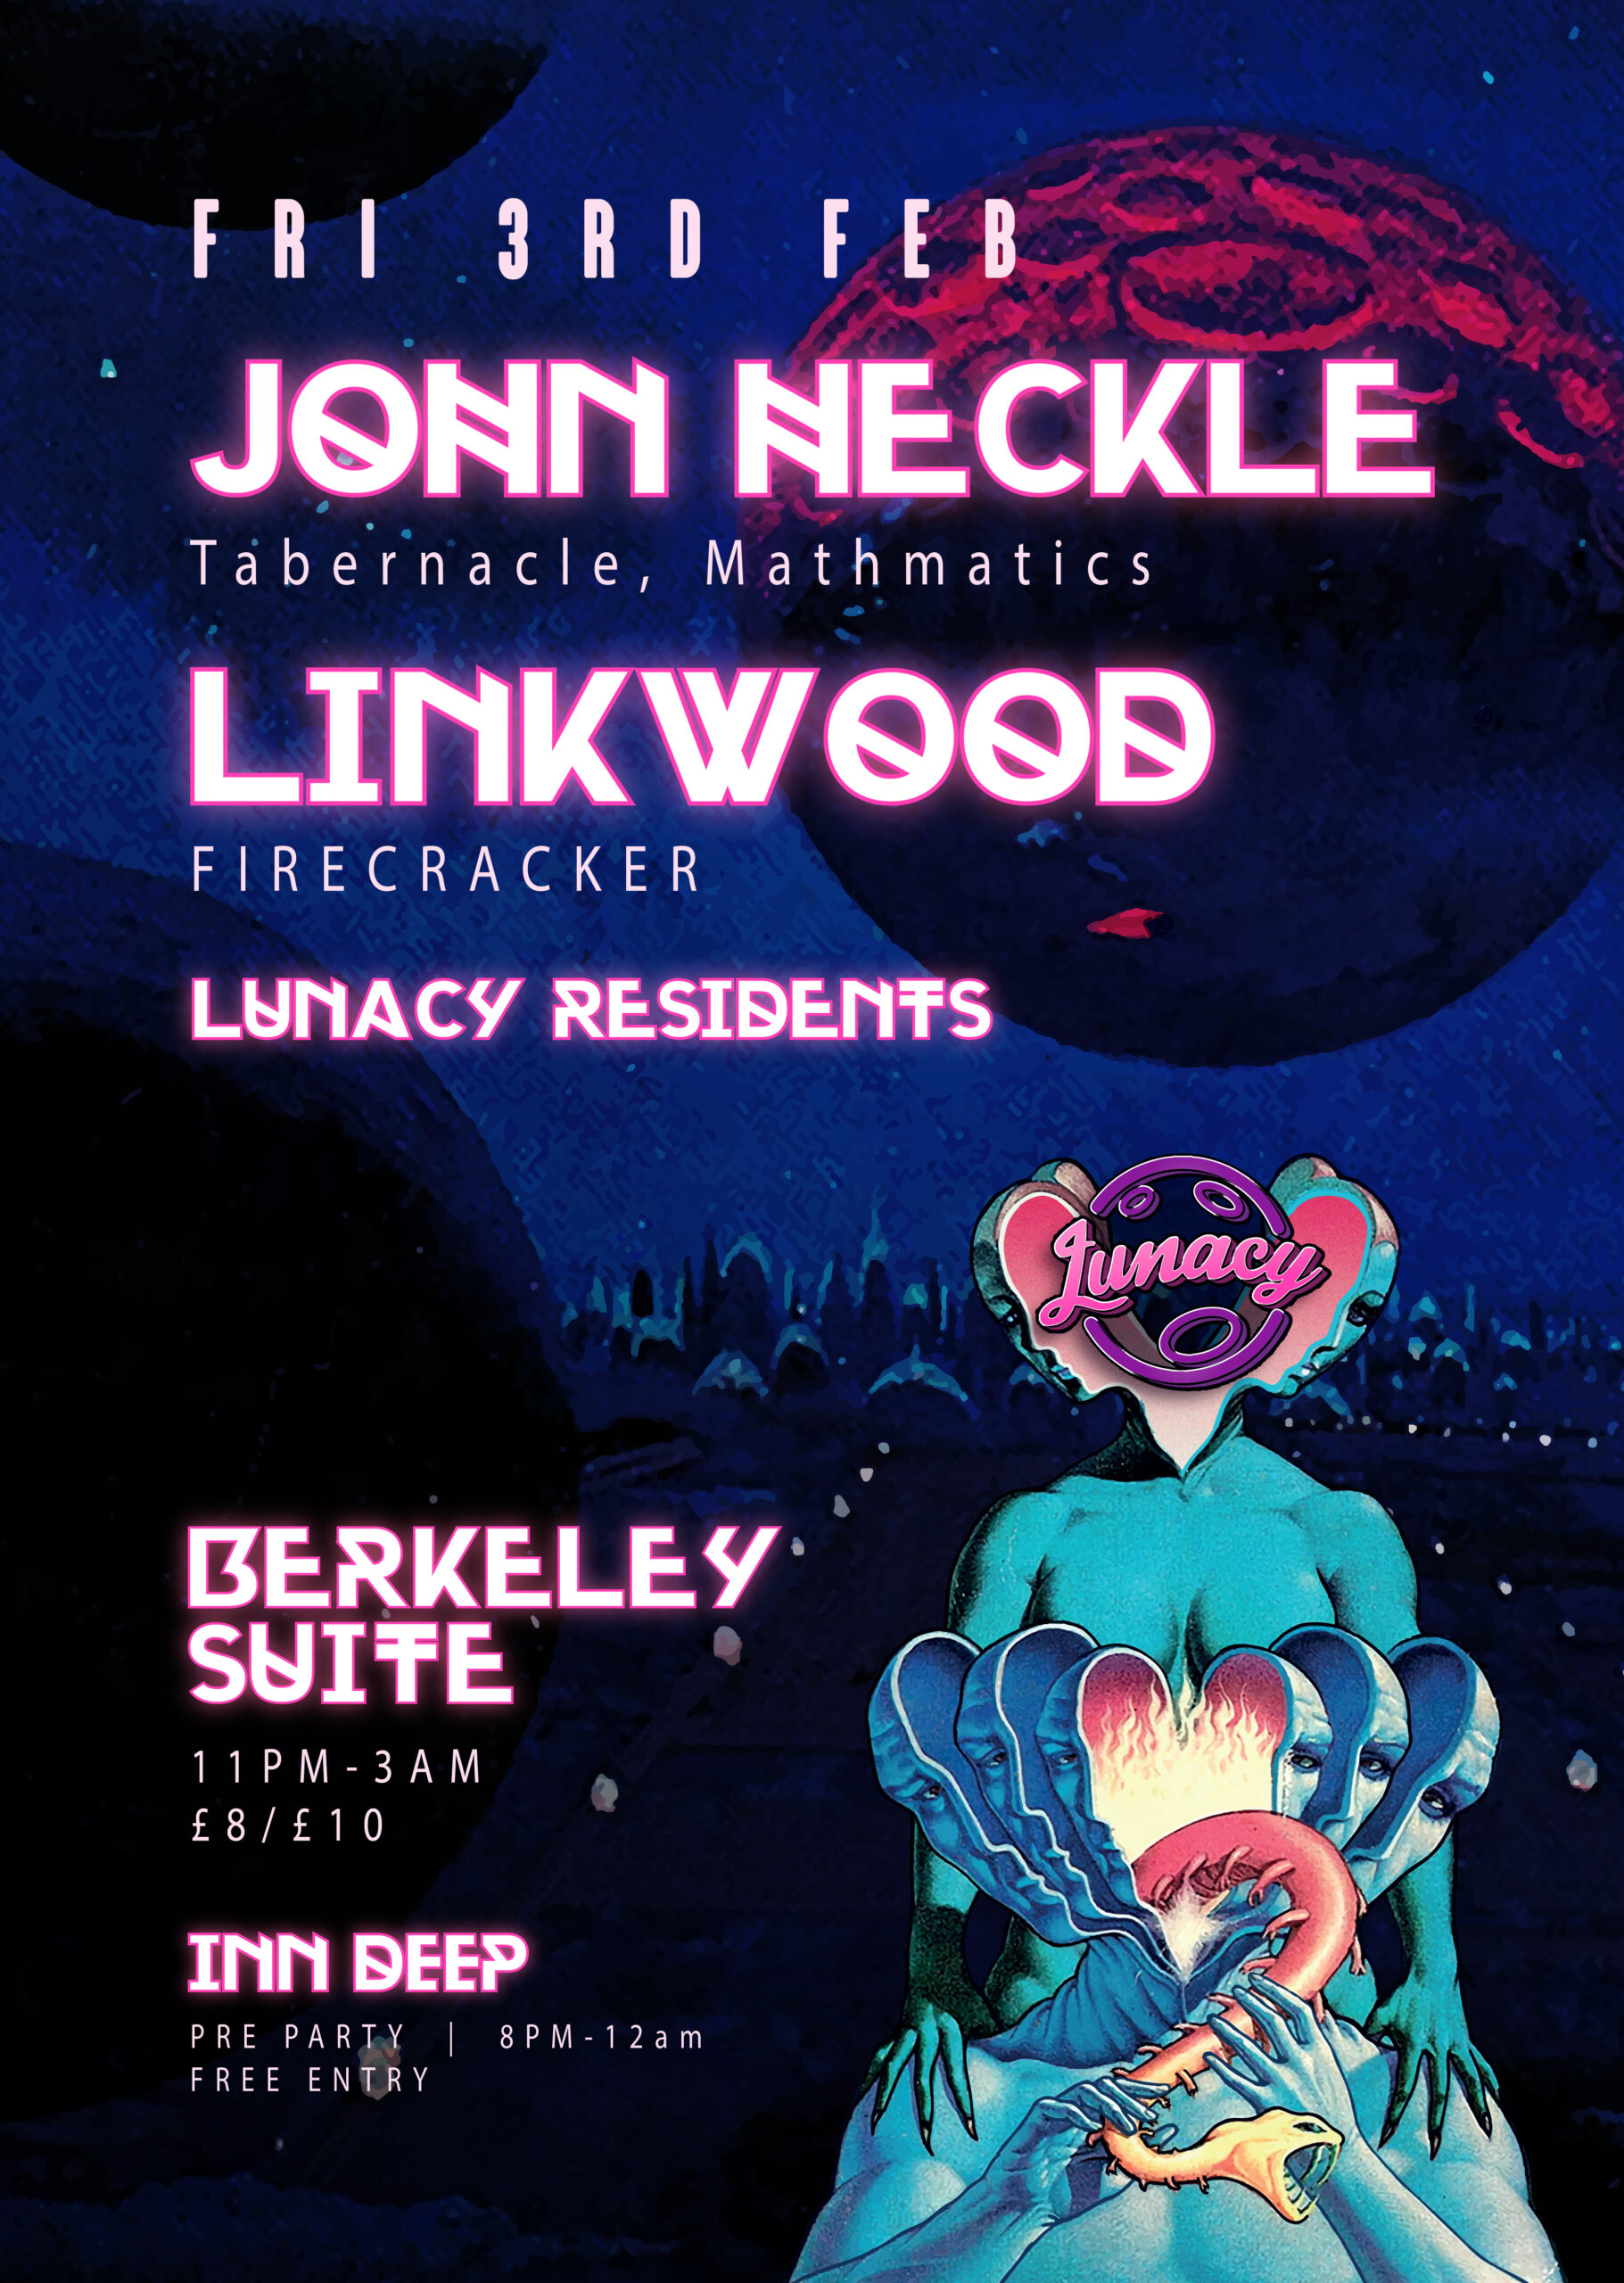 John Heckle & Linkwood 03/02/16